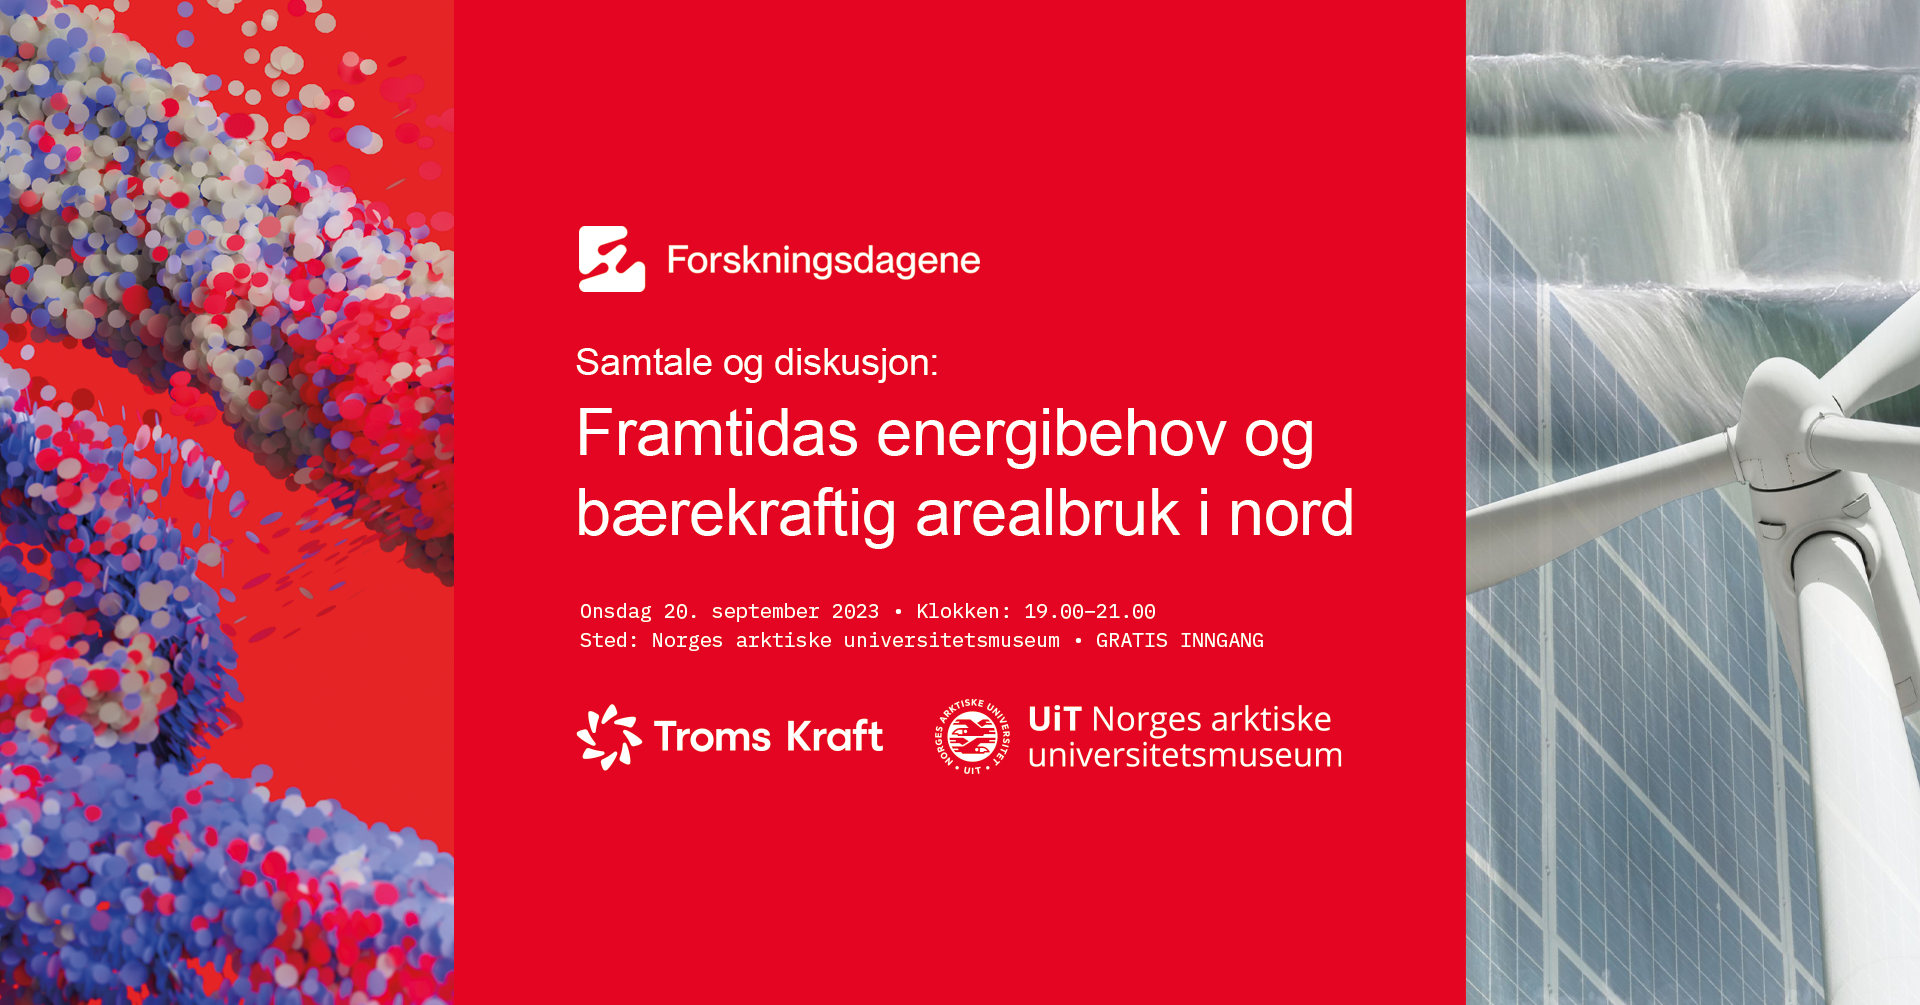 Illustrasjons-/bannerbilde for Framtidas energibehov og bærekraftig arealbruk i nord - samtale og diskusjon